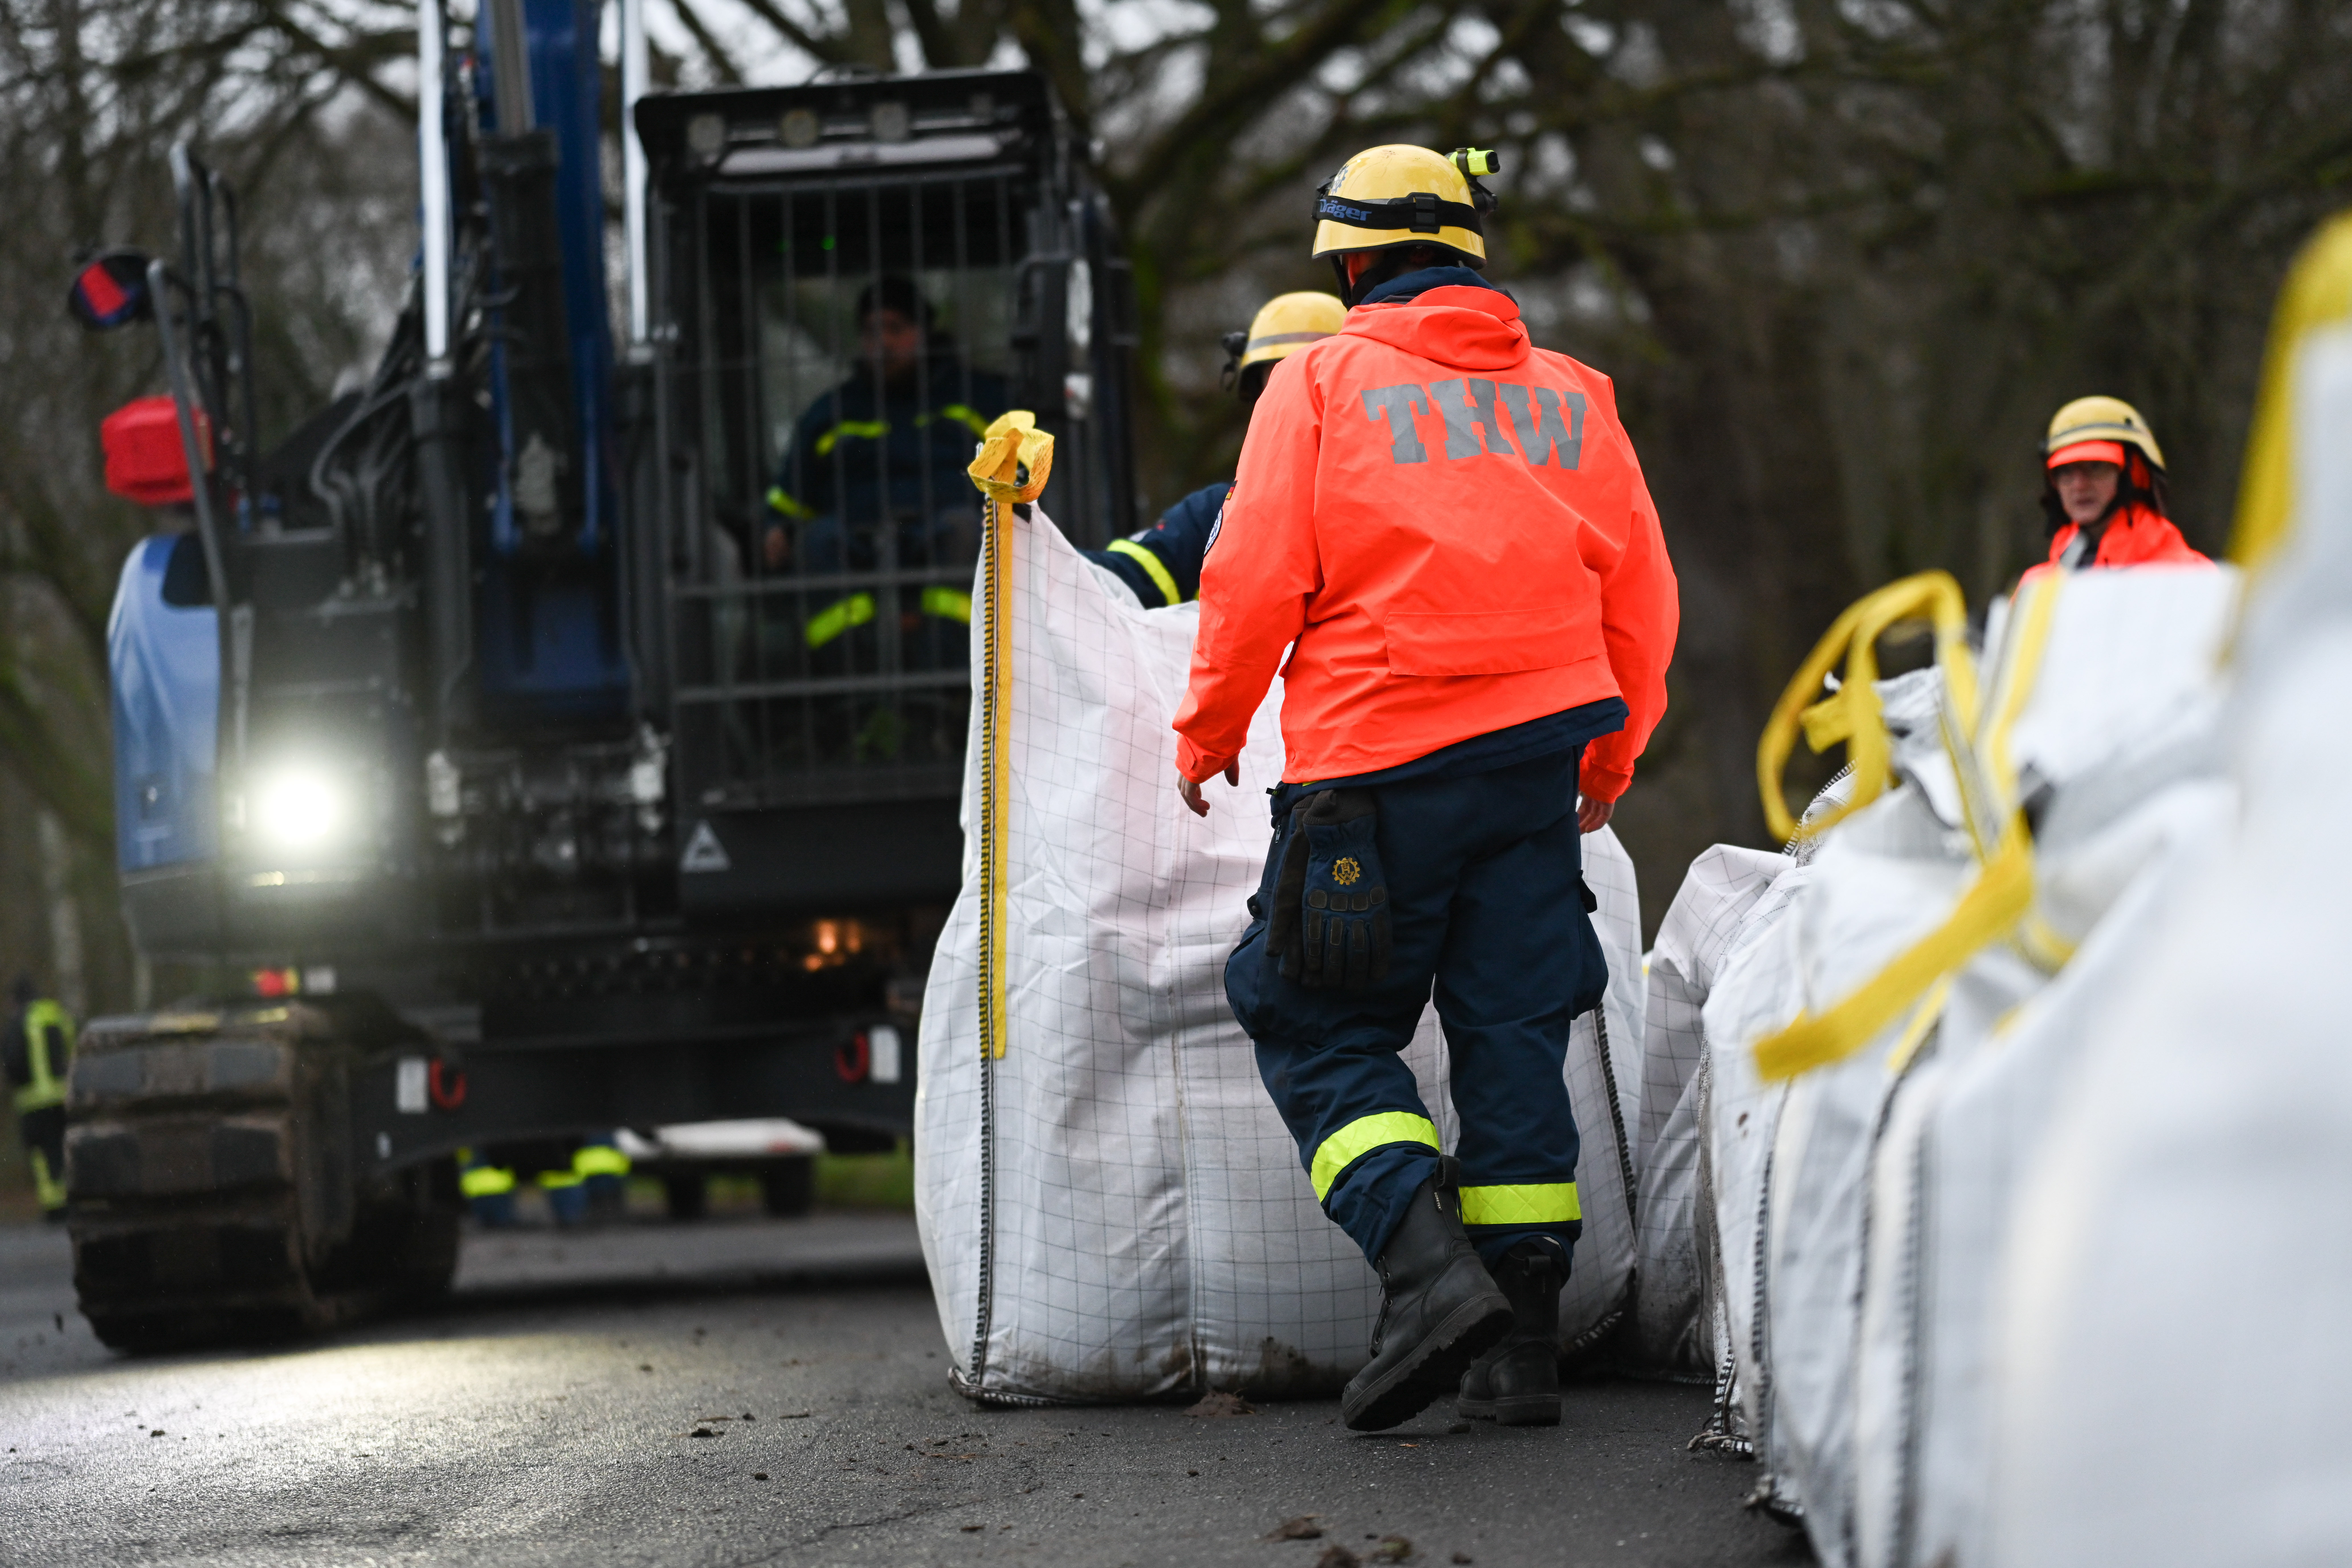 Ehrenamtliche Einsatzkräfte der Feuerwehr und des Technischen Hilfswerks (THW) bauen einen Mobildeich mit Sandsäcken auf, um ein Wohngebiet unweit der Ems zu sichern.